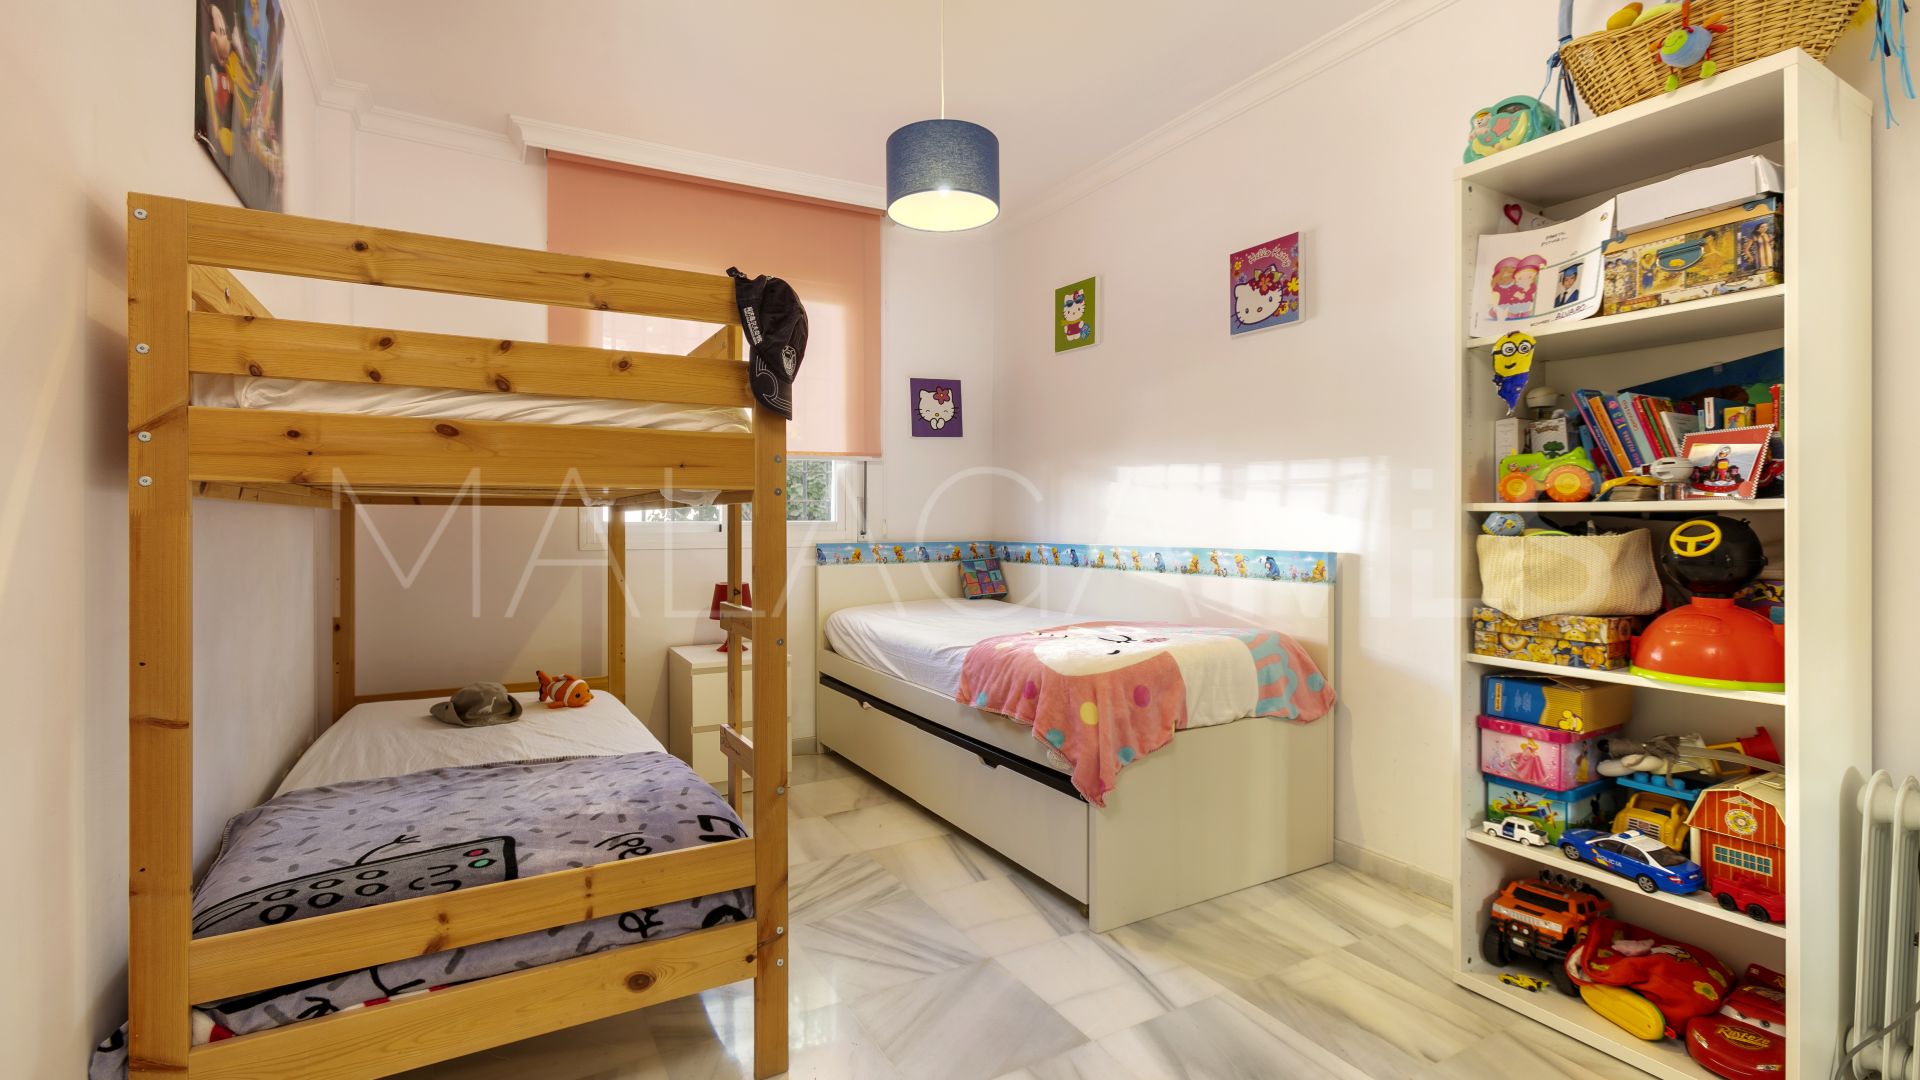 3 bedrooms ground floor duplex in Señorio de Gonzaga for sale